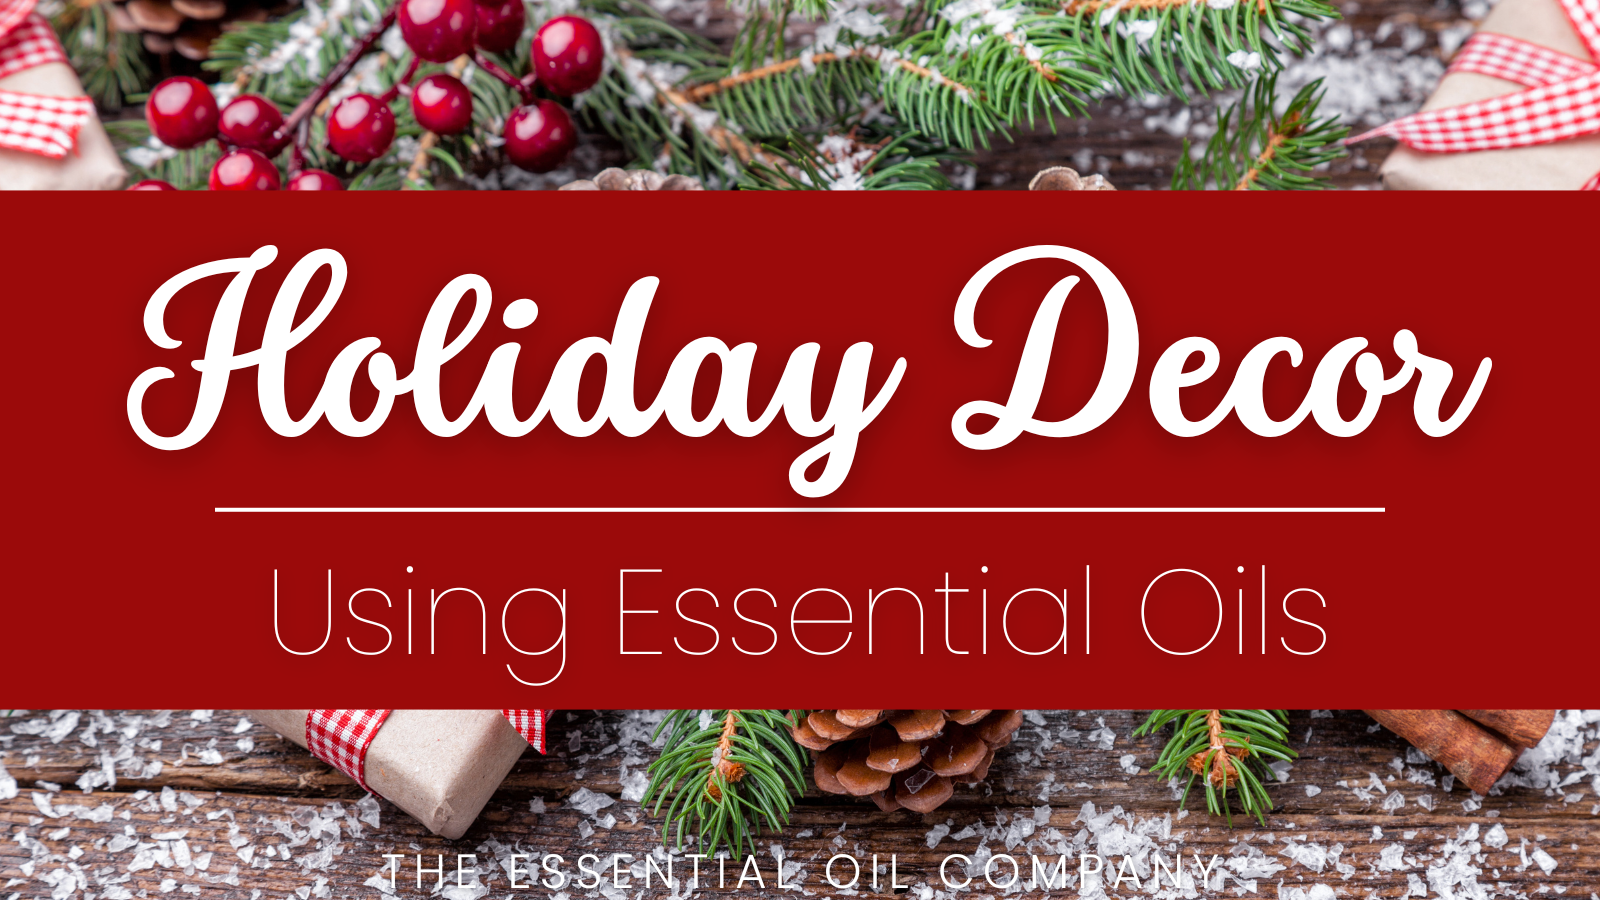 Holiday Decor Using Essential Oils